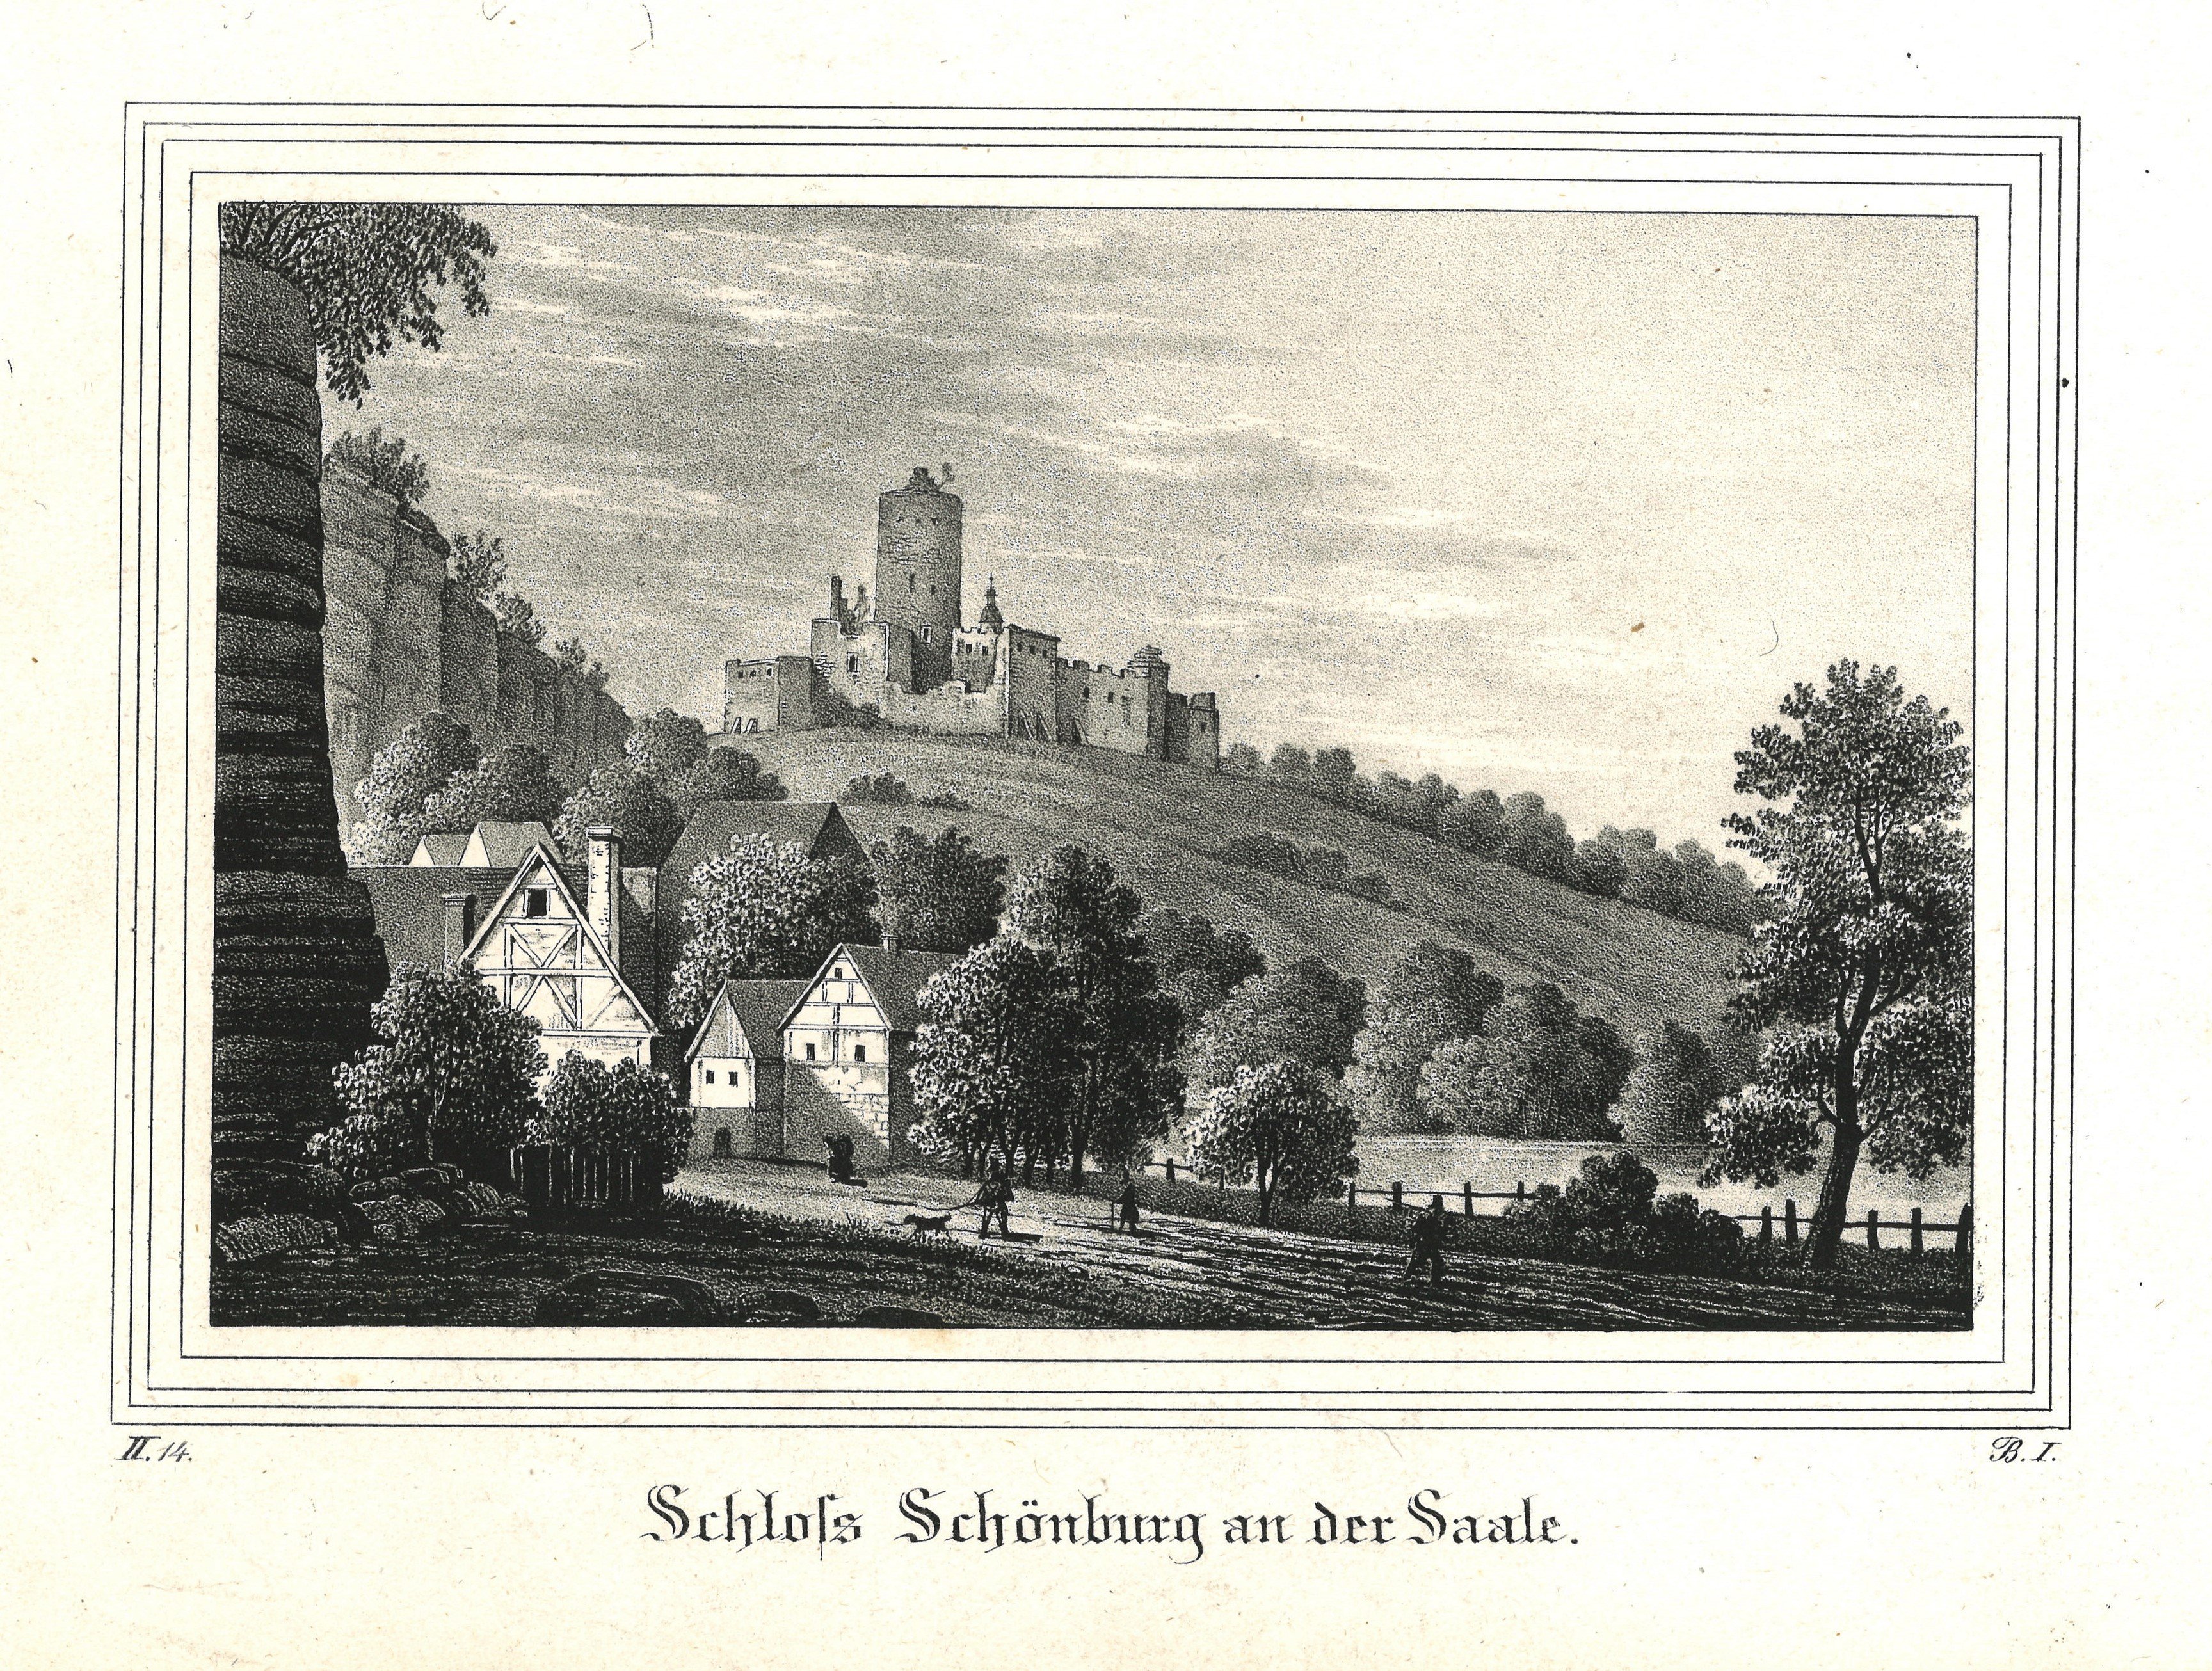 Schönburg (Saale) (Sachsen-Anhalt): Burg Schönburg (Landesgeschichtliche Vereinigung für die Mark Brandenburg e.V., Archiv CC BY)